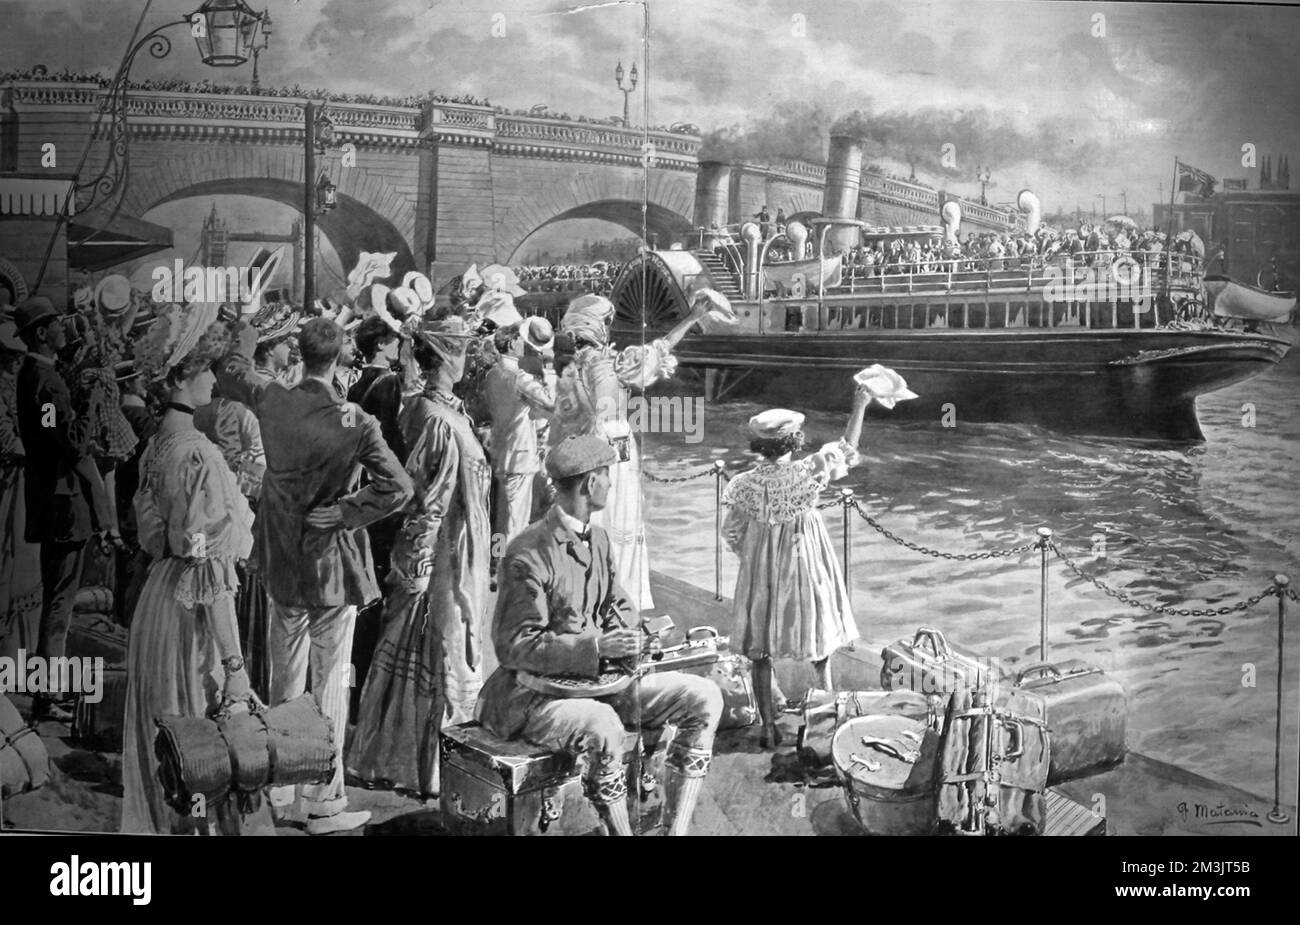 New Palace Steamer, il 'Koh-i-noor' che lascia l'Old Swan Pier per Margate. Lo Sphere soprannominato il viaggio come "il viaggio lungo il fiume che porta salute ai londinesi stanchi". Data: 1906 Foto Stock